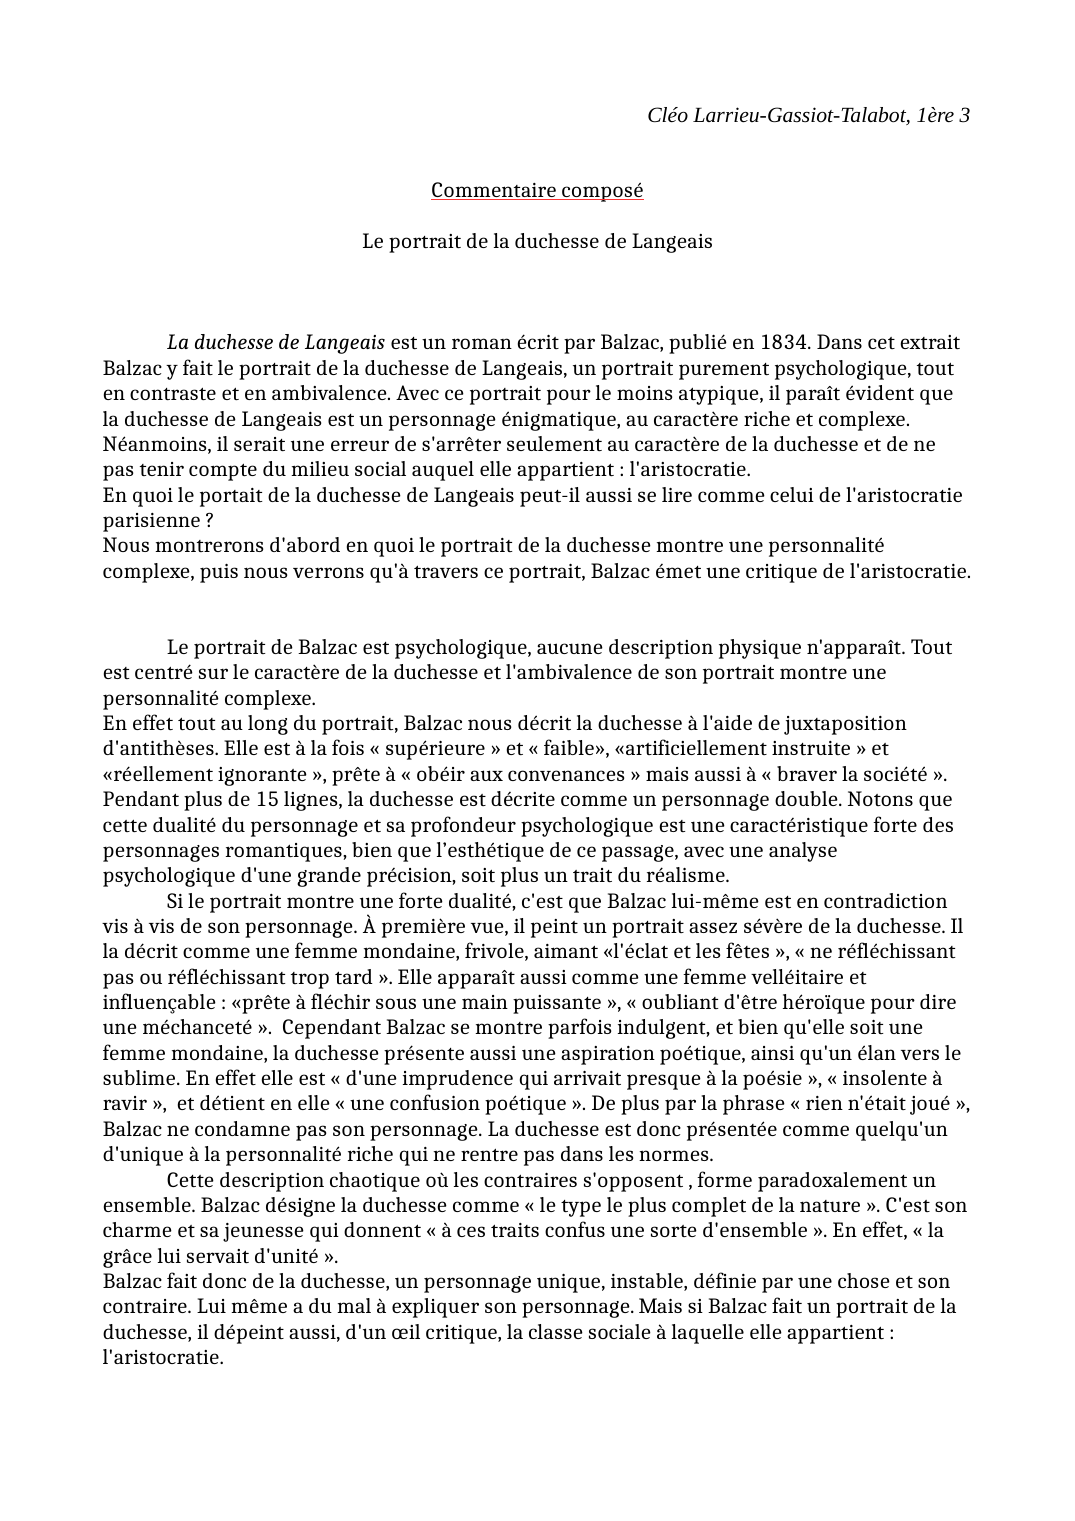 Prévisualisation du document commentaire composé sur Le portrait de la duchesse de Langeais